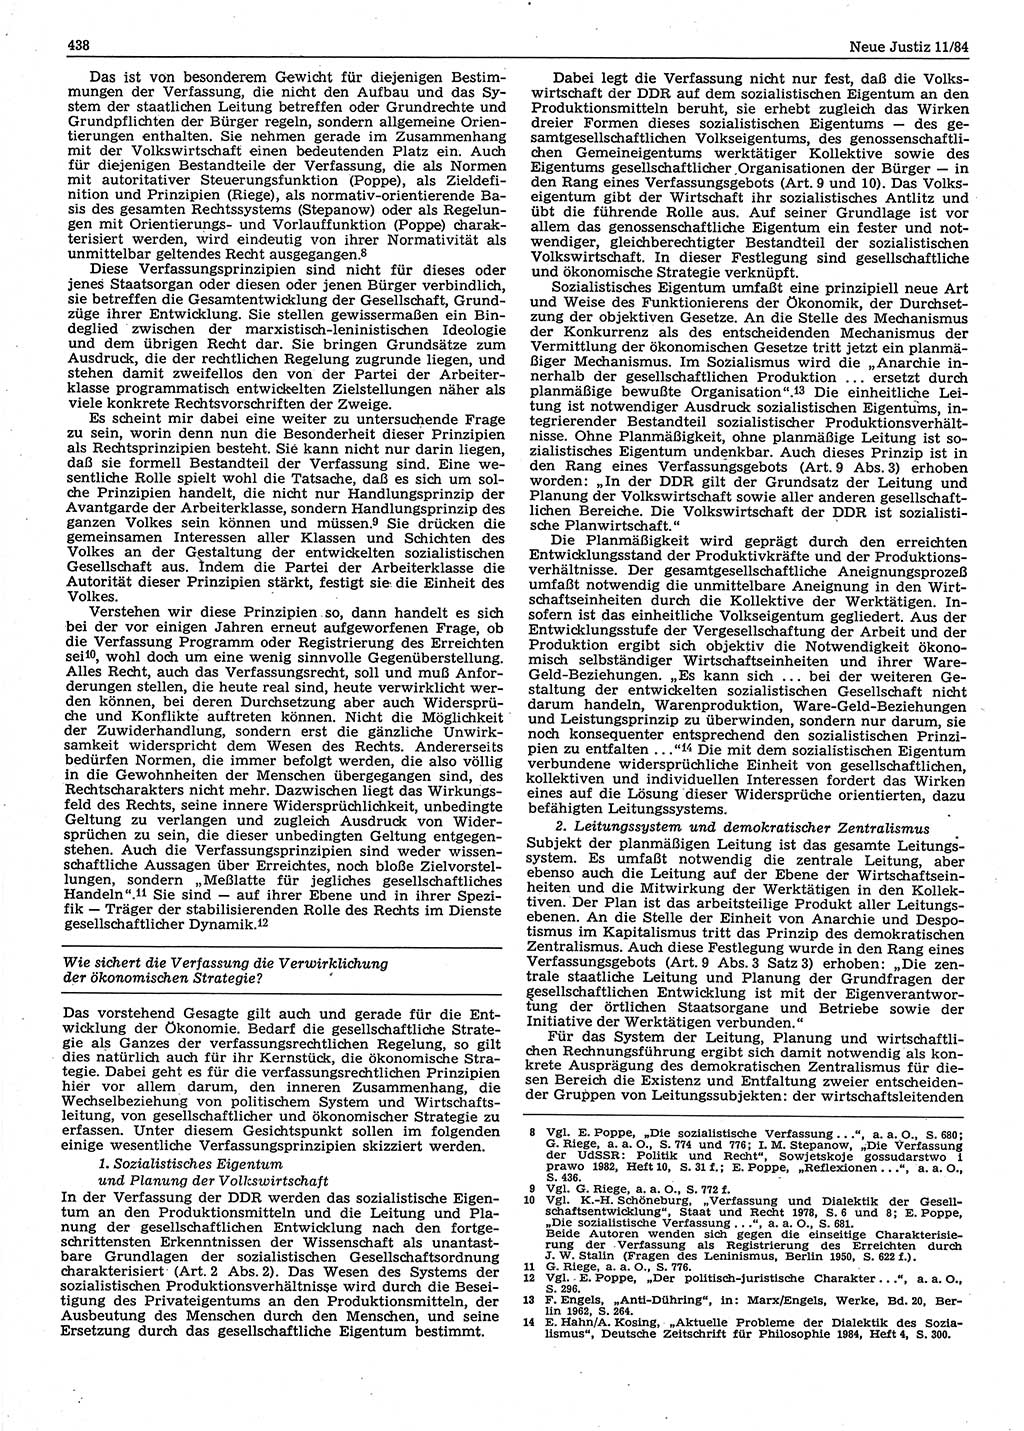 Neue Justiz (NJ), Zeitschrift für sozialistisches Recht und Gesetzlichkeit [Deutsche Demokratische Republik (DDR)], 38. Jahrgang 1984, Seite 438 (NJ DDR 1984, S. 438)